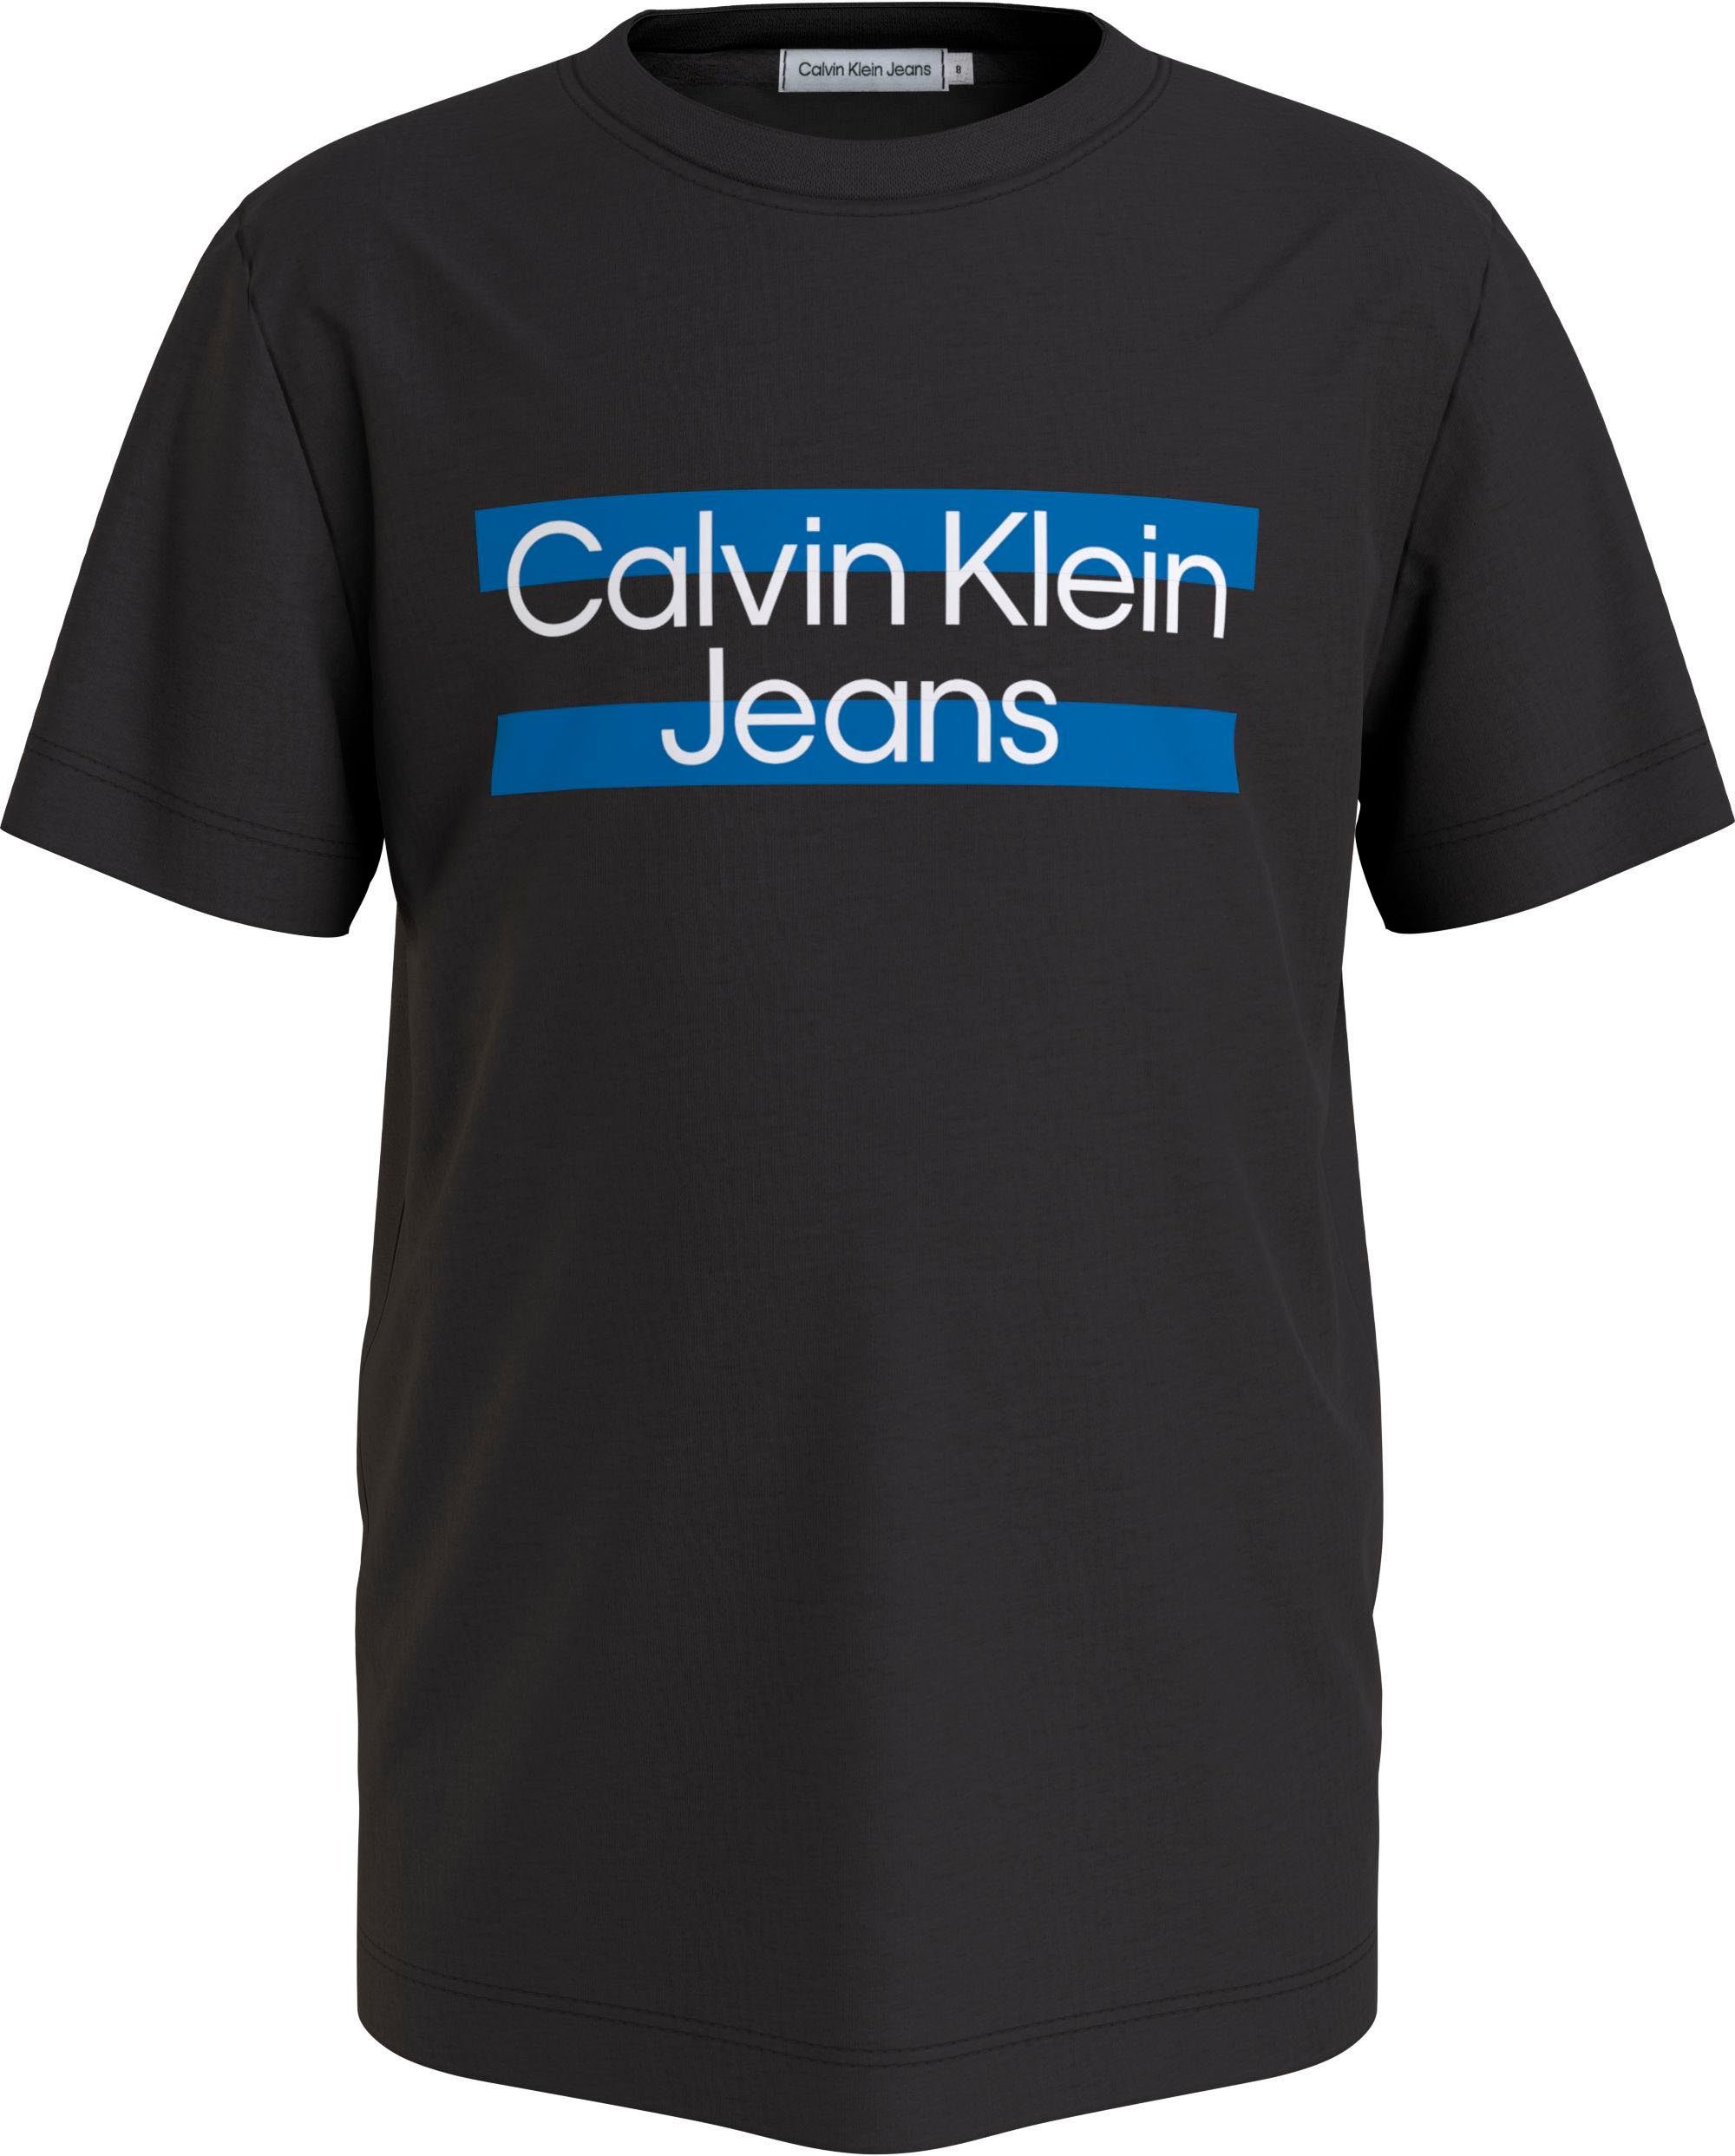 mit Brust Logodruck Klein der Calvin Jeans auf schwarz T-Shirt Calvin Klein